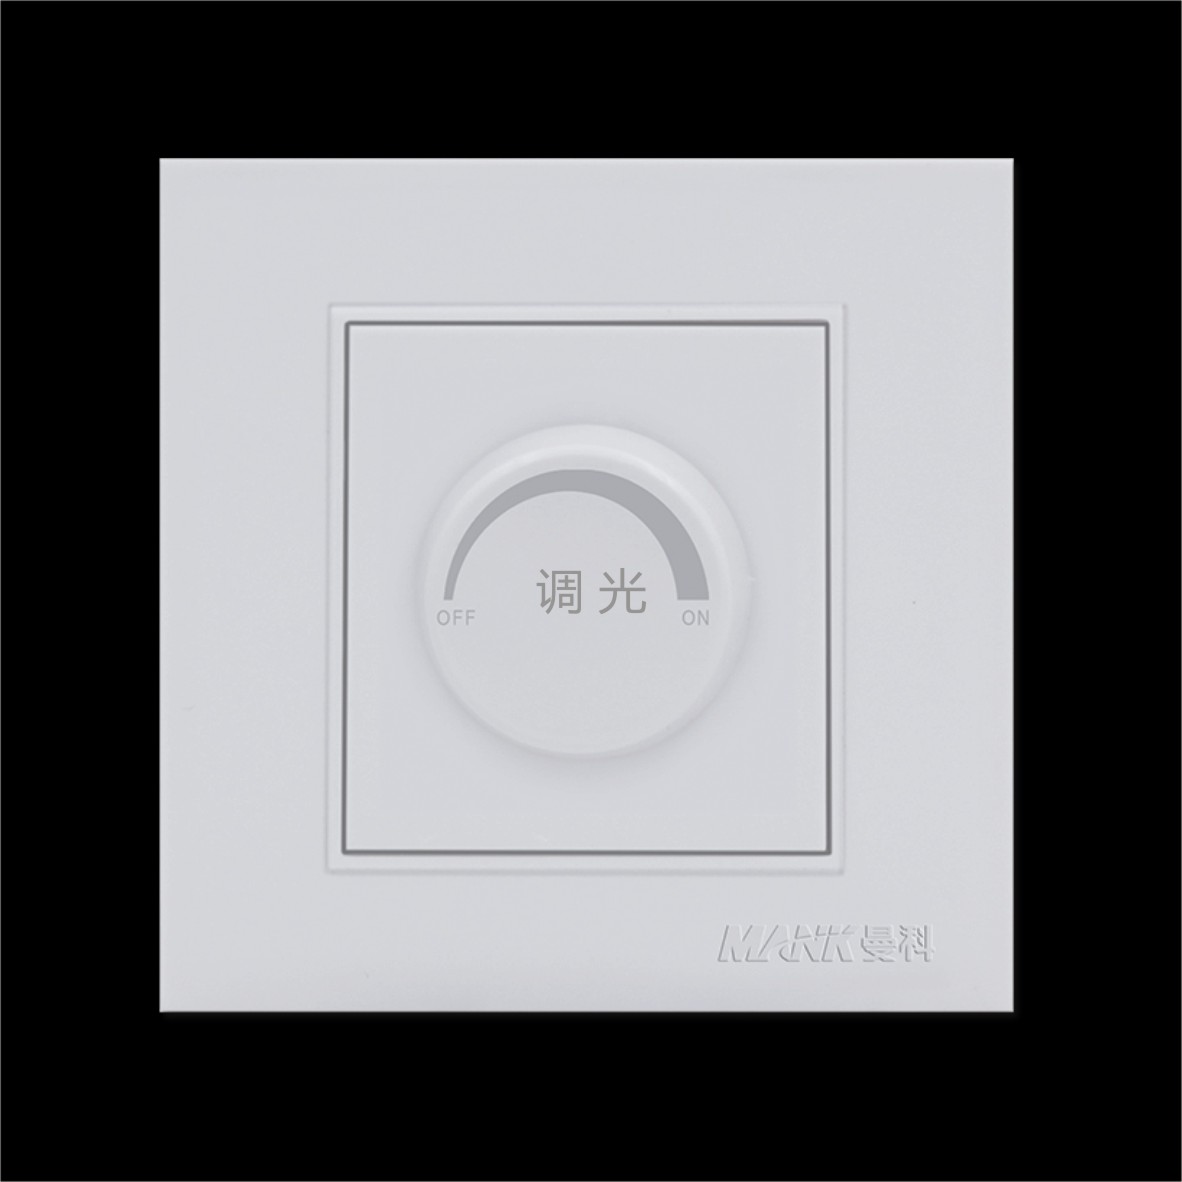 Jinxi_One 250W dimmer switch